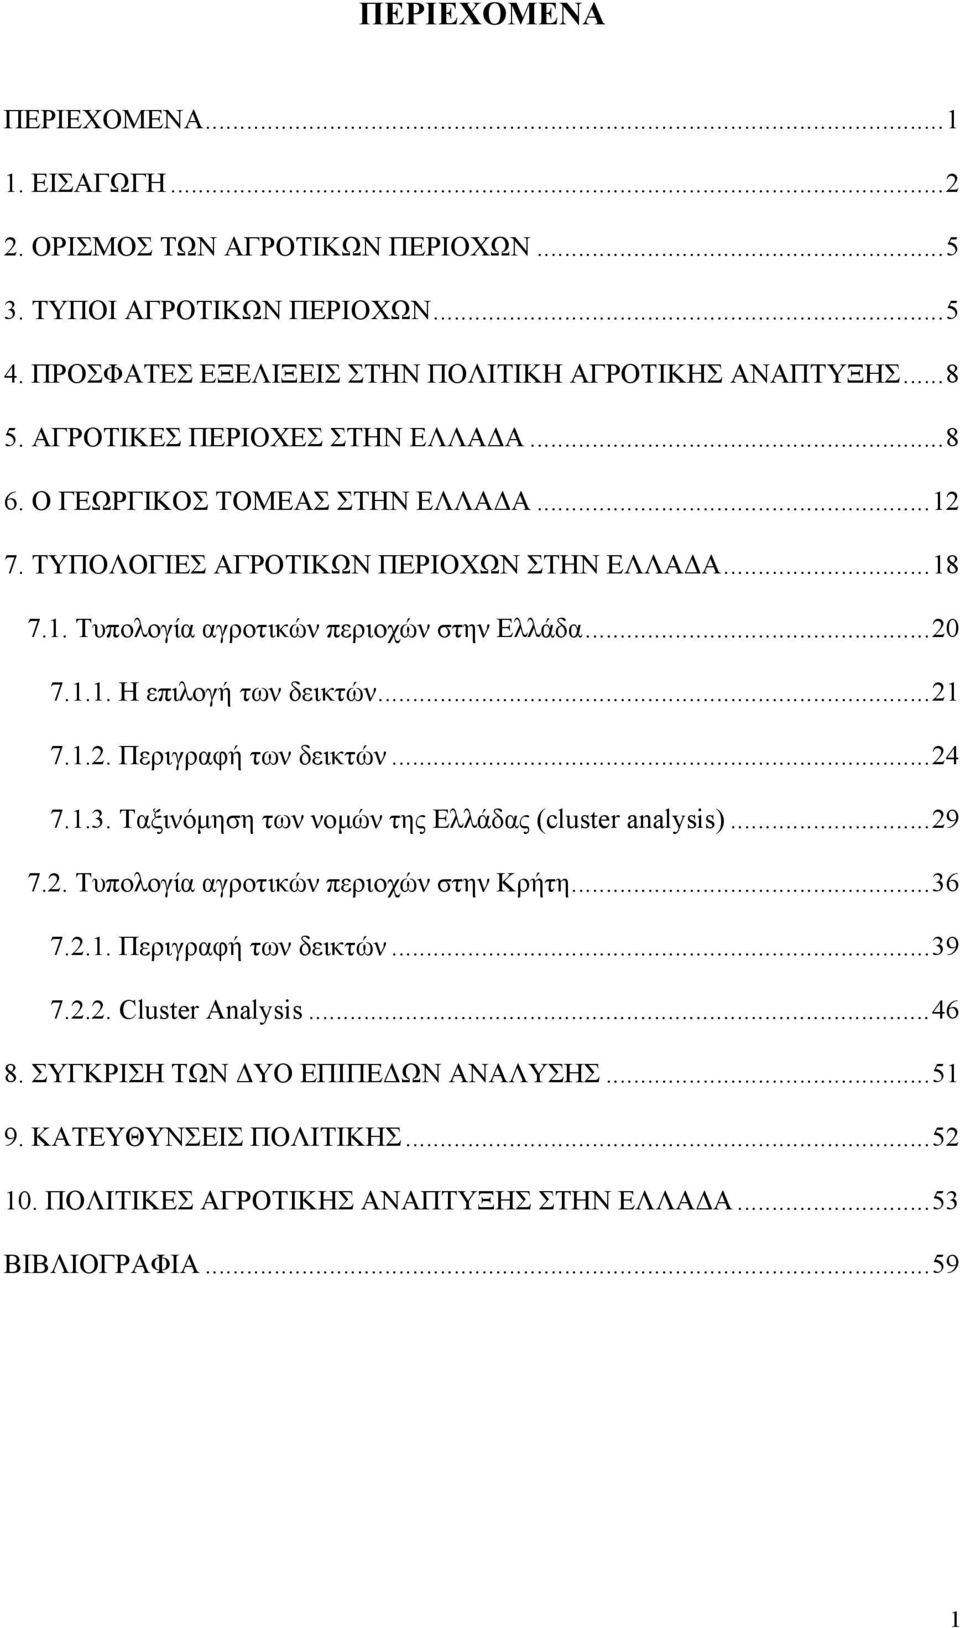 .. 21 7.1.2. Περιγραφή των δεικτών... 24 7.1.3. Ταξινόµηση των νοµών της Ελλάδας (cluster analysis)... 29 7.2. Τυπολογία αγροτικών περιοχών στην Κρήτη... 36 7.2.1. Περιγραφή των δεικτών... 39 7.